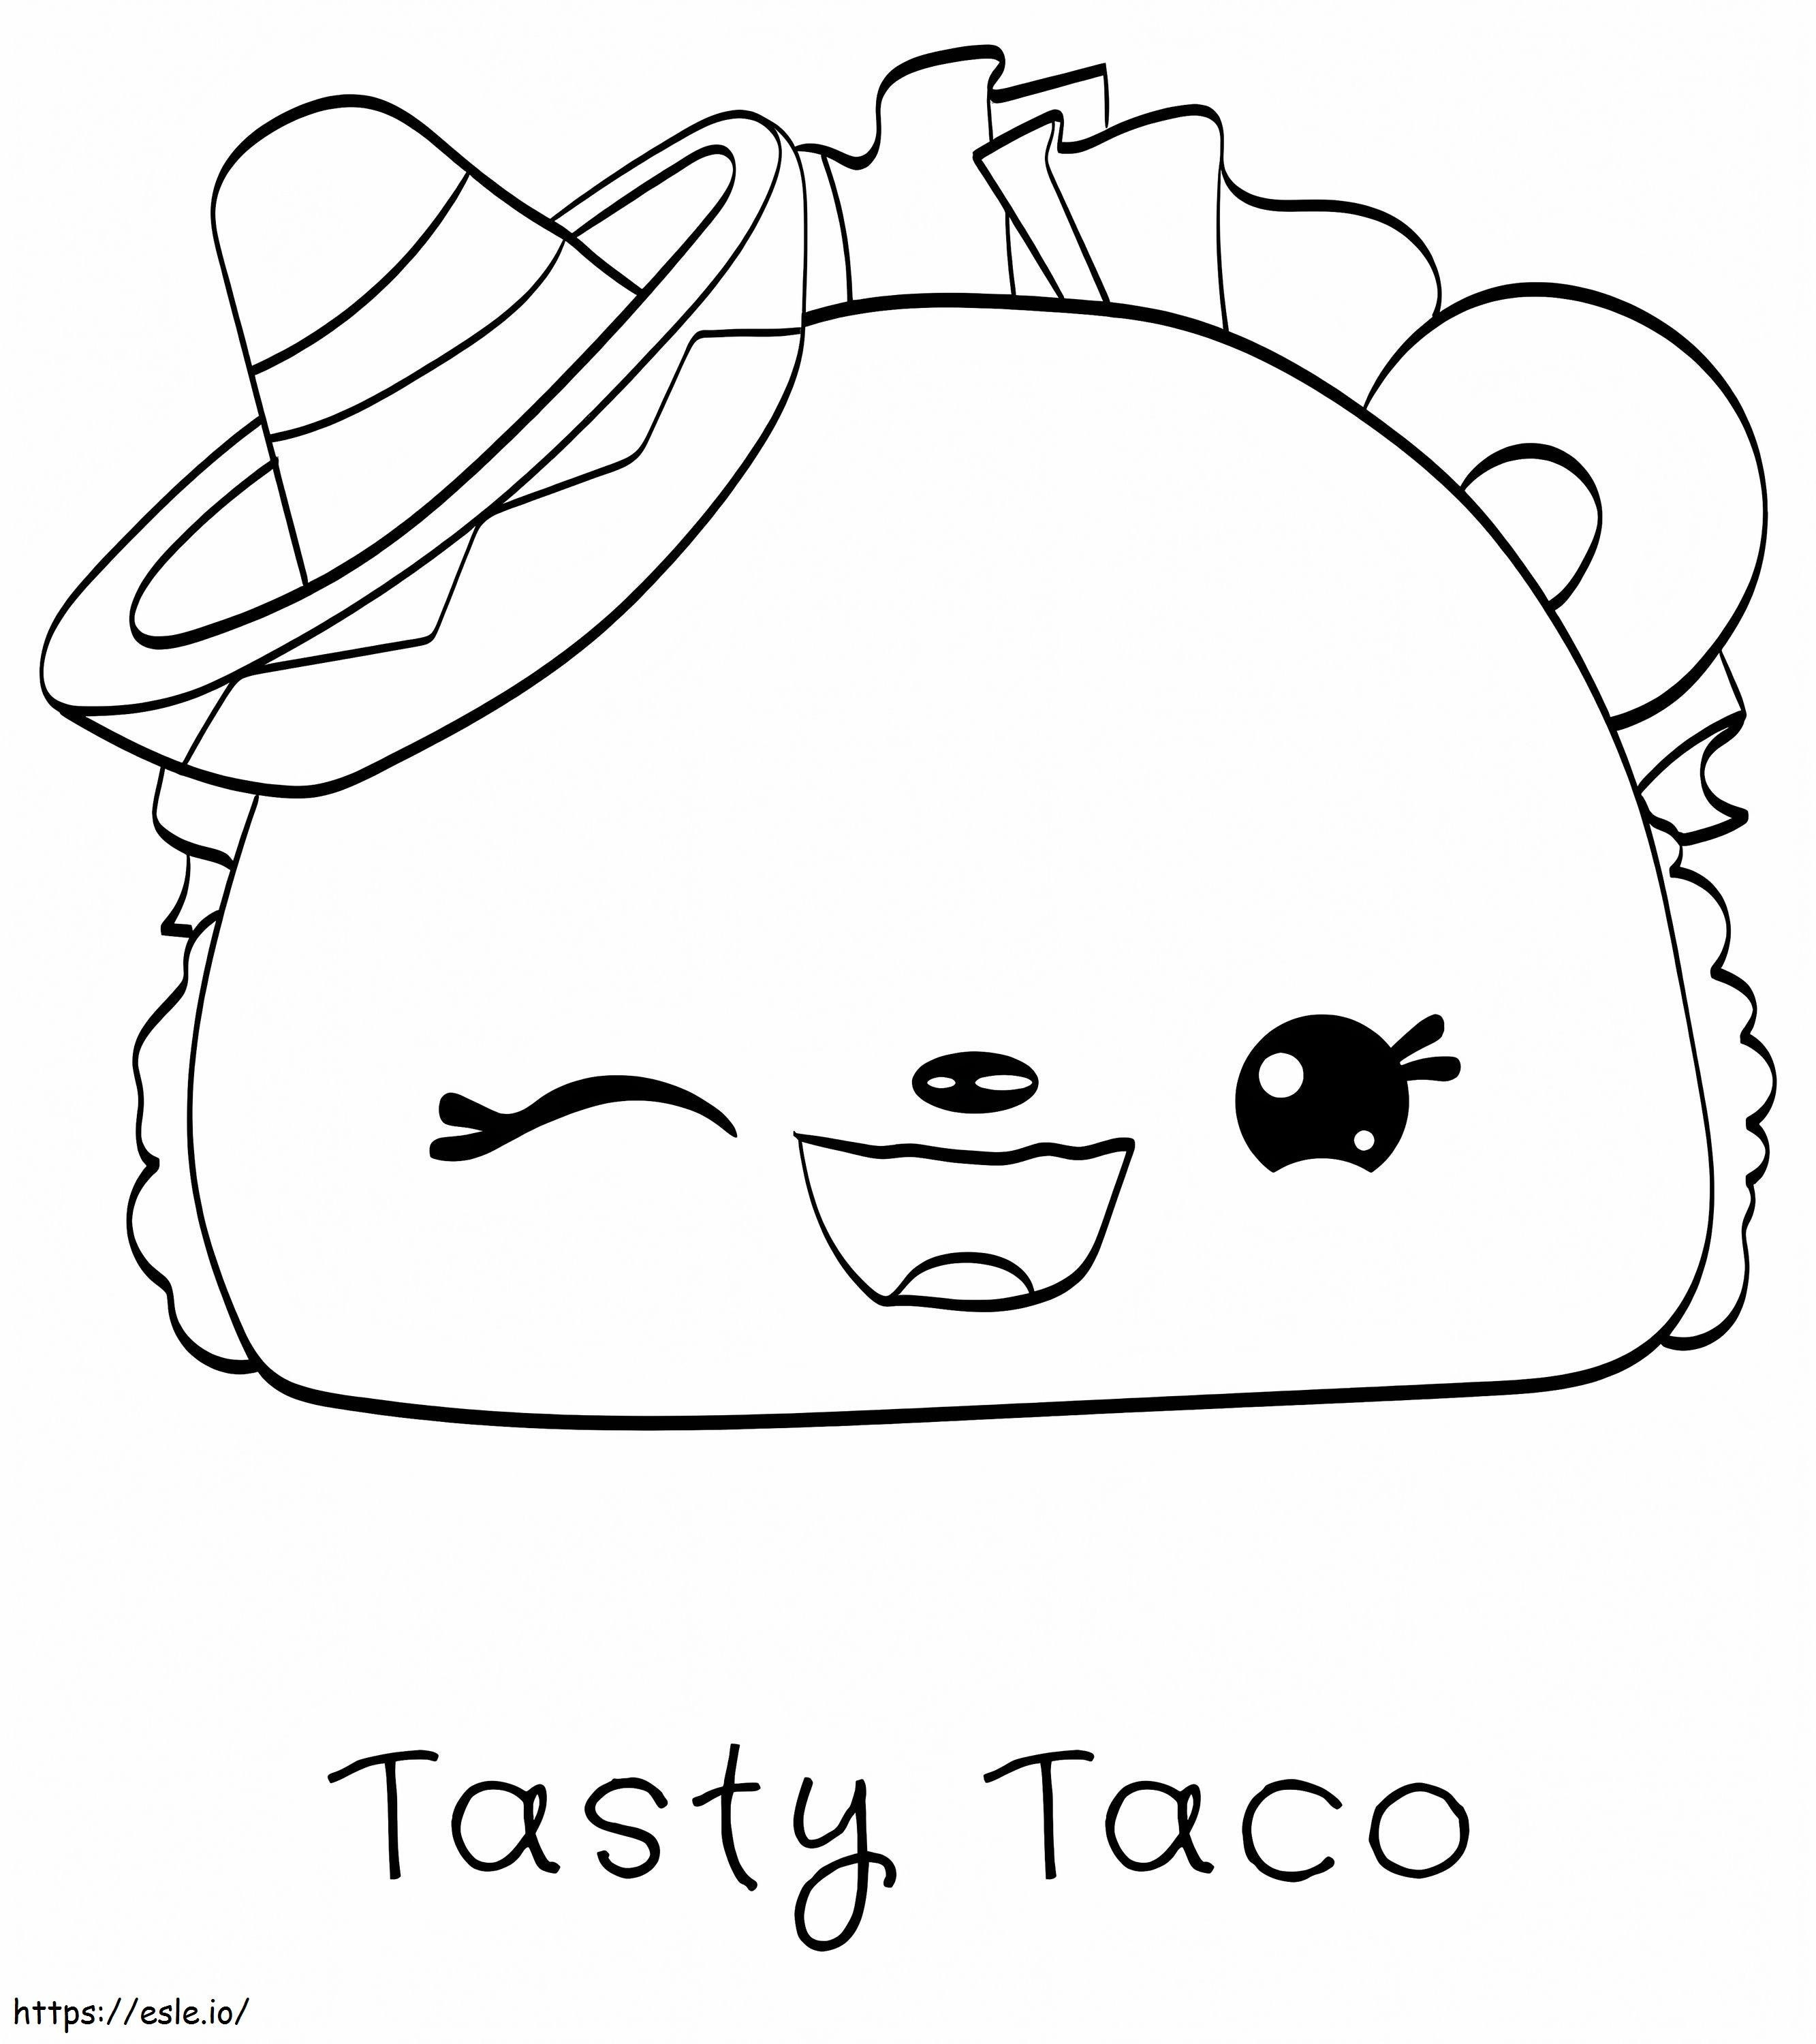 Fun Taco Taco La Num Noms de colorat